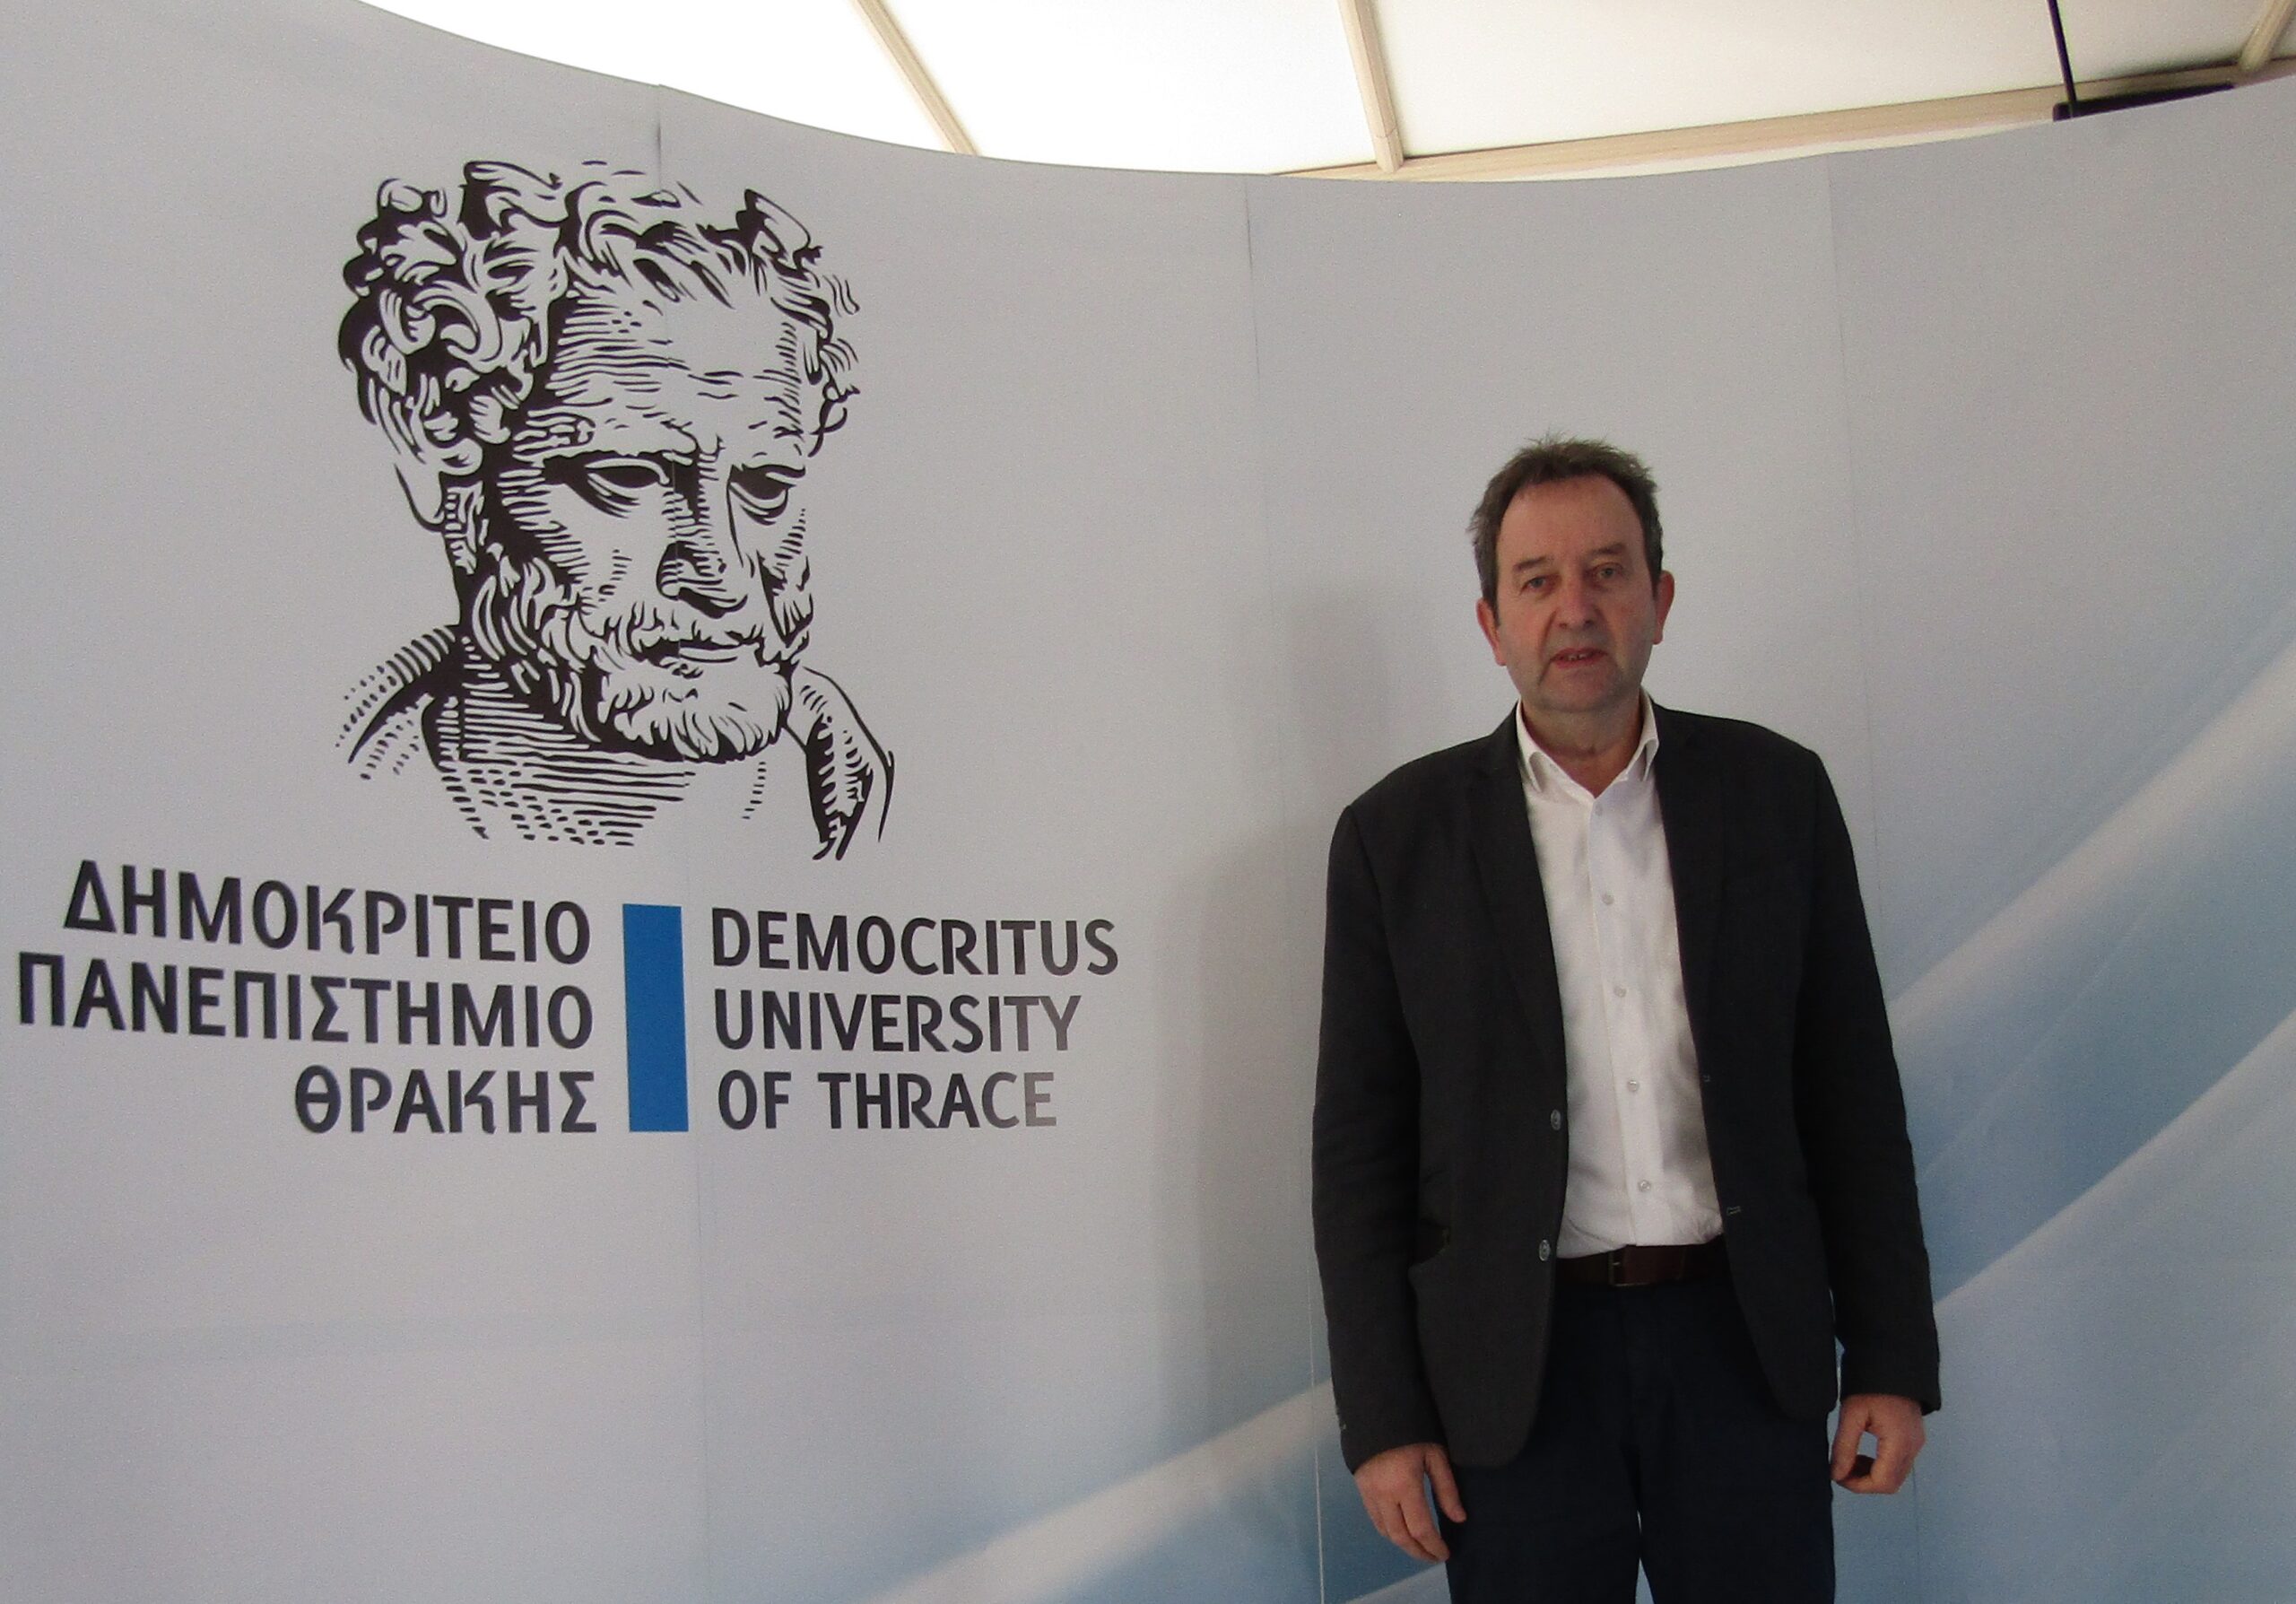 Χαρίτου: «Η κυβέρνηση της ΝΔ αντί να ενισχύει αποδυναμώνει το Δημοκρίτειο Πανεπιστήμιο Θράκης – Κούφιες οι υποσχέσεις για την ίδρυση και λειτουργία νέων τμημάτων»